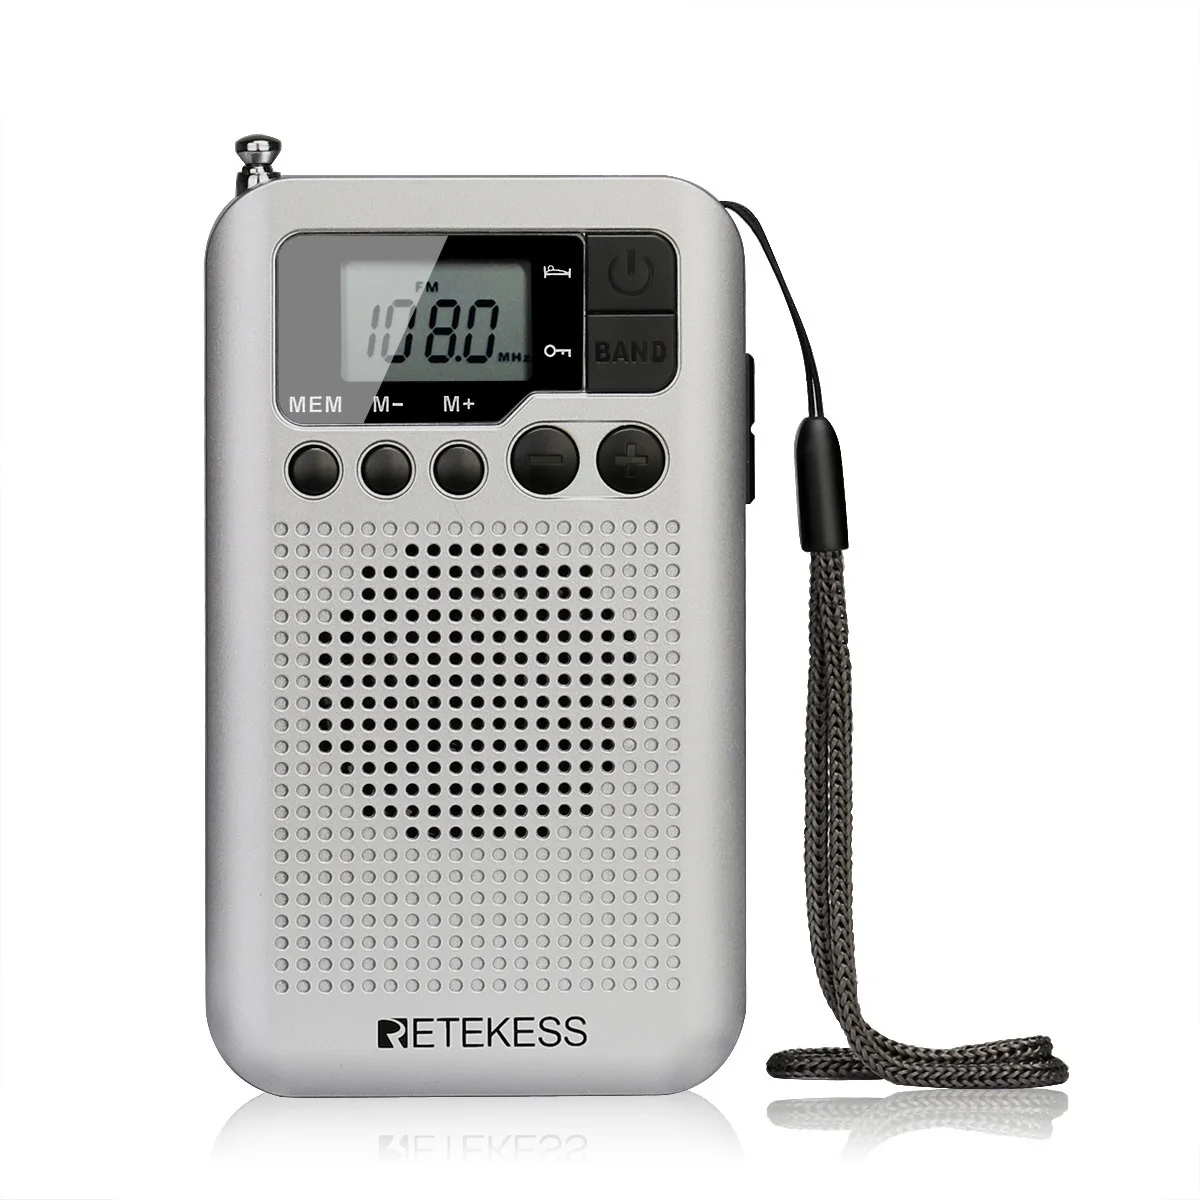 

Верх. Портативный FM AM радиоприемник TR106 с ЖК-дисплеем, Цифровая настройка динамика, разъем для наушников и функцией часов